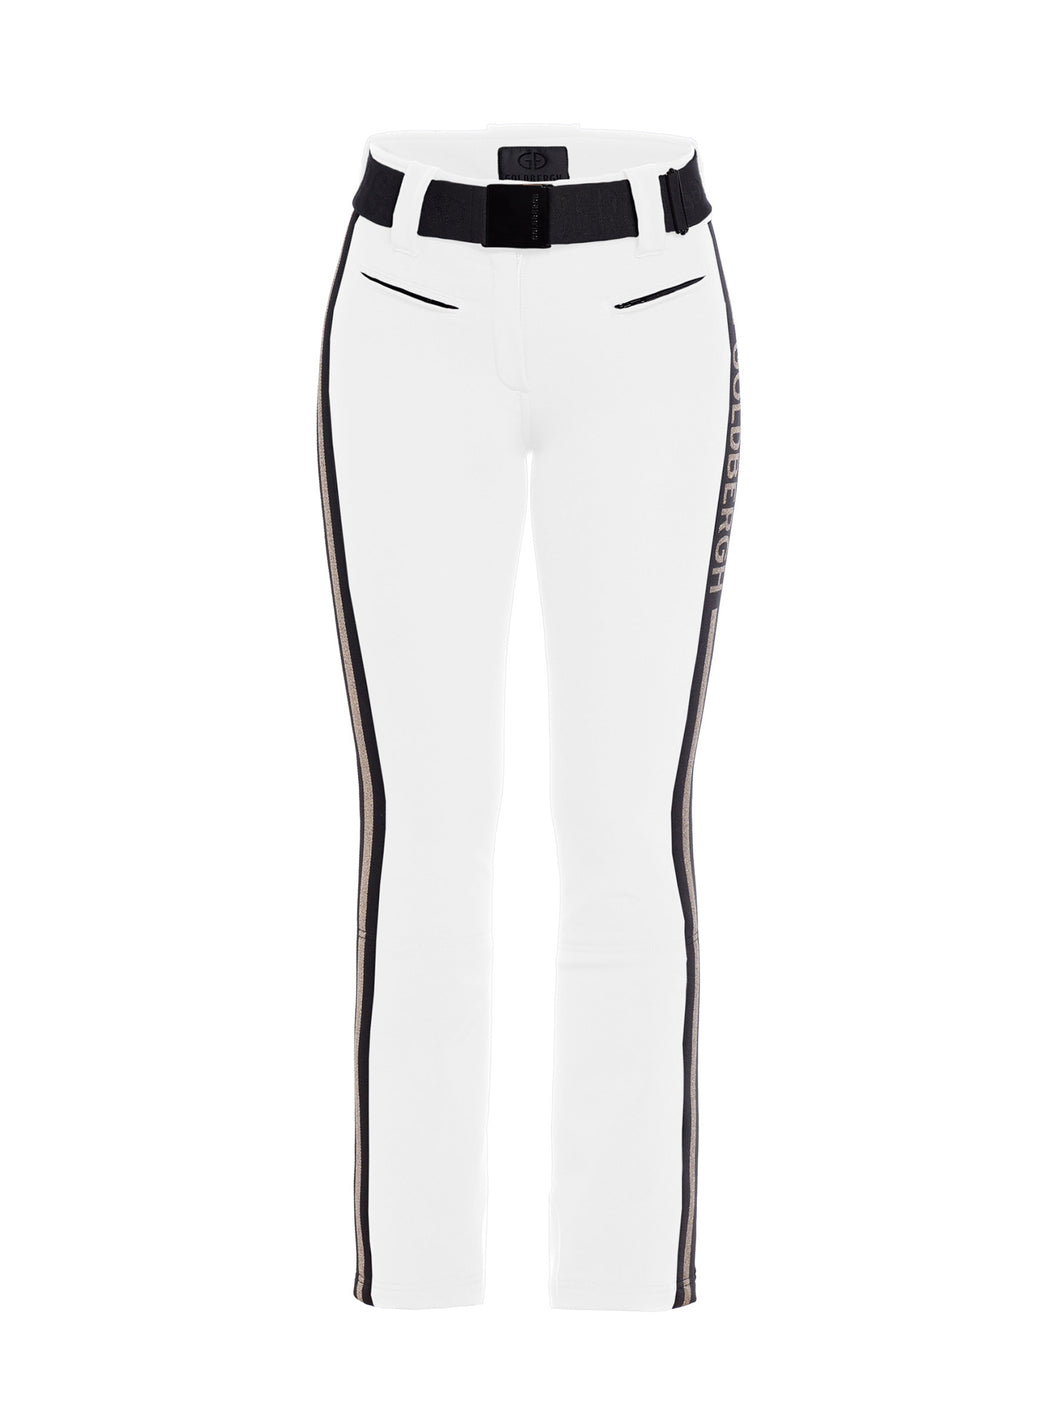 Cher Ski Pants - white